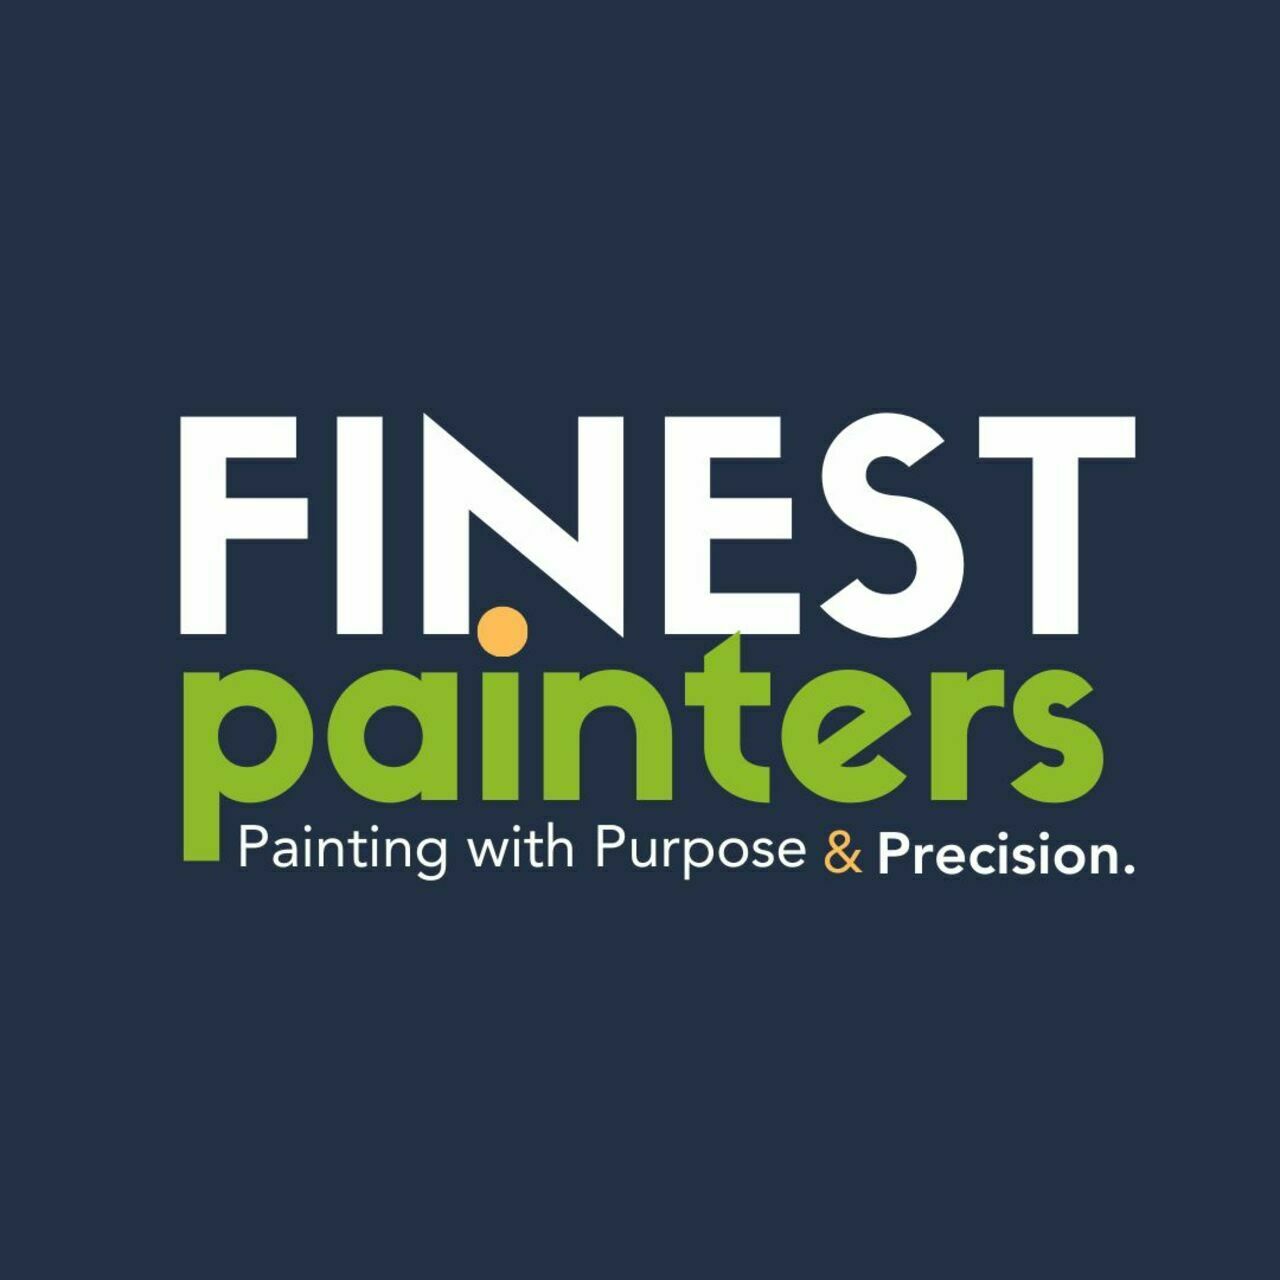 Finest Painters's logo